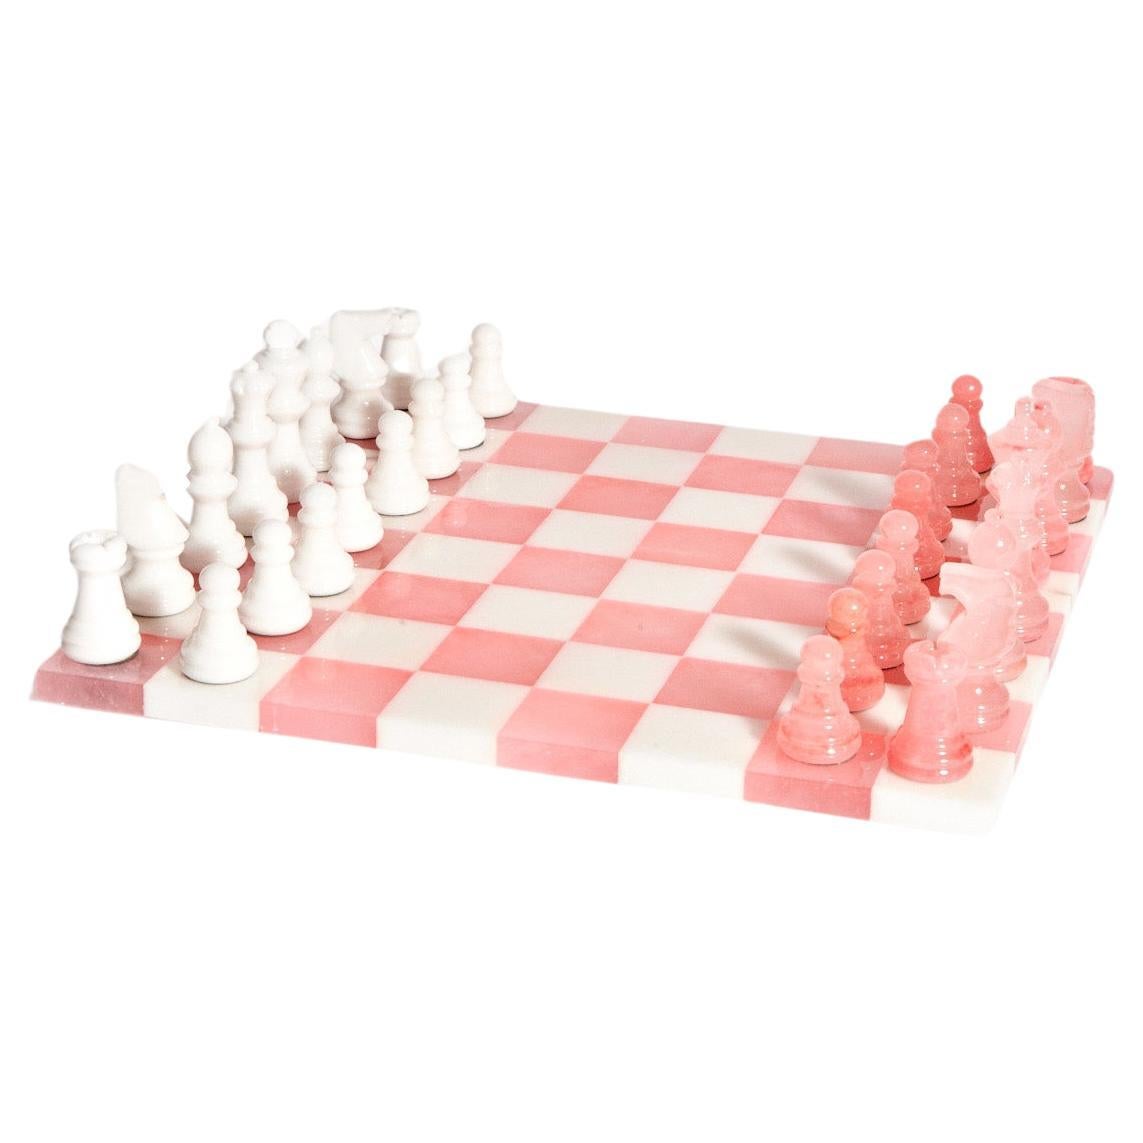 Grand jeu d'échecs italien en albâtre rose pâle/blanc en vente